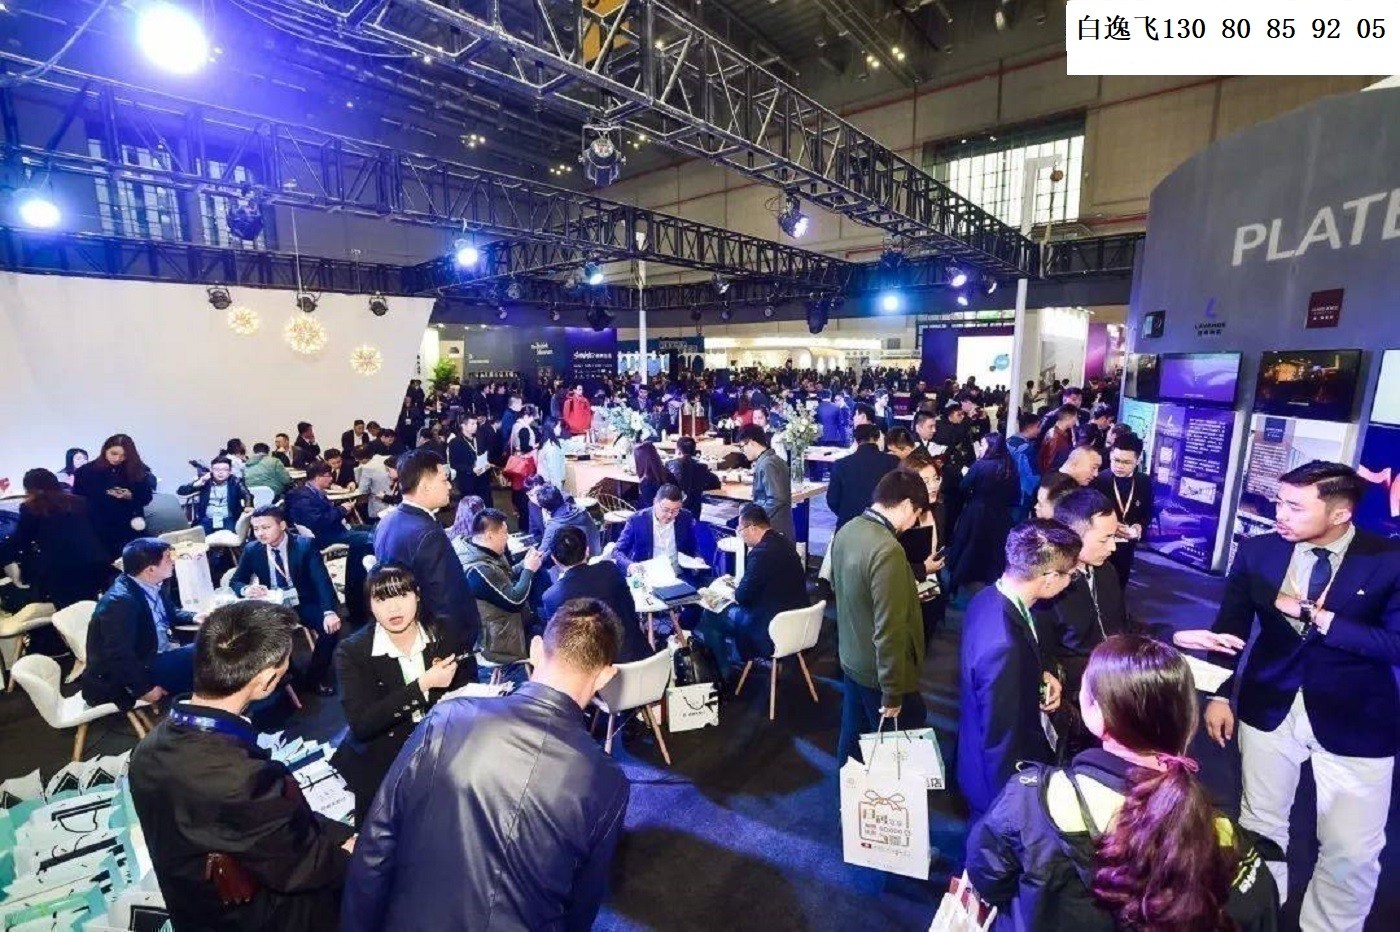 2023中国（武汉）国际农业机械博览会